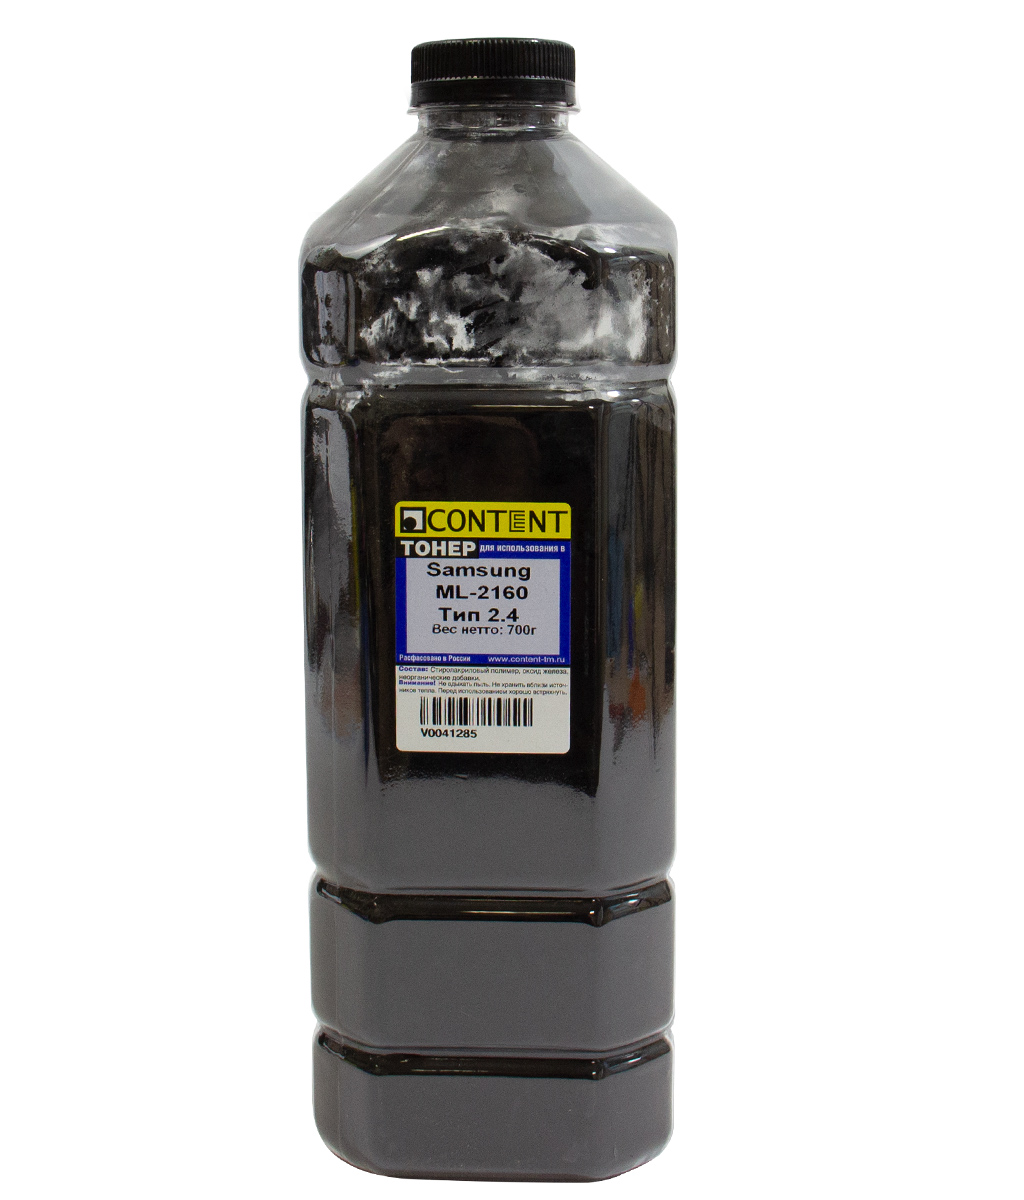 Тонер Content Тип 2.4, бутыль 700 г, черный, совместимый для Samsung ML-2160 (V0041285)